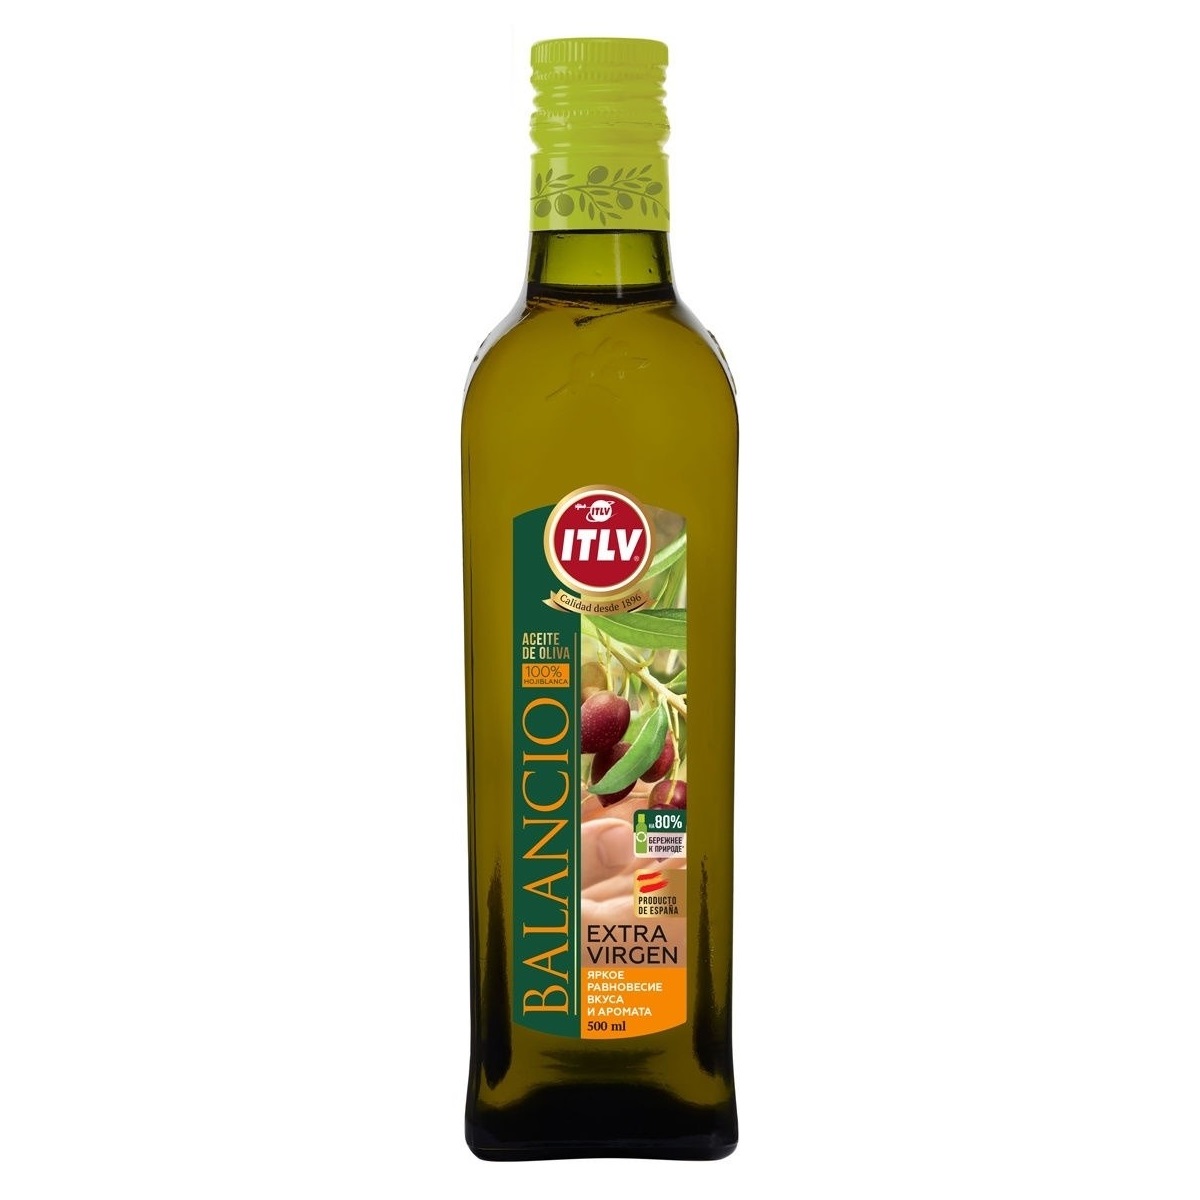  Масло оливковое ITLV Extra Virgin Balancio 500 мл стеклянная бутылка